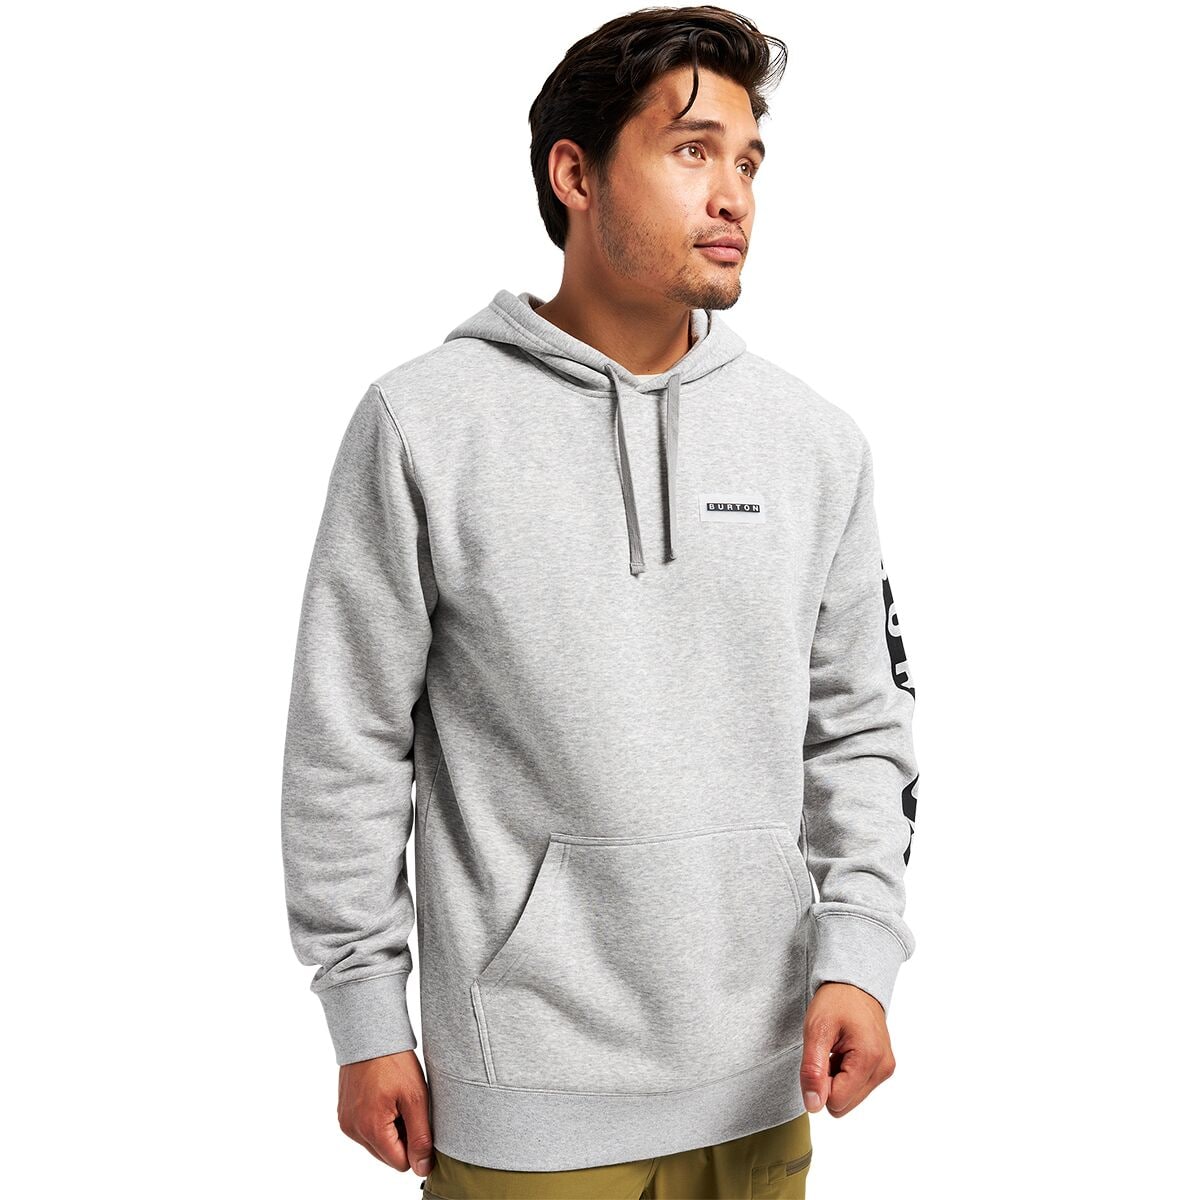 Louis Vuitton Cotton Hoodies & Sweatshirts for Men for Sale, Shop Men's  Athletic Clothes